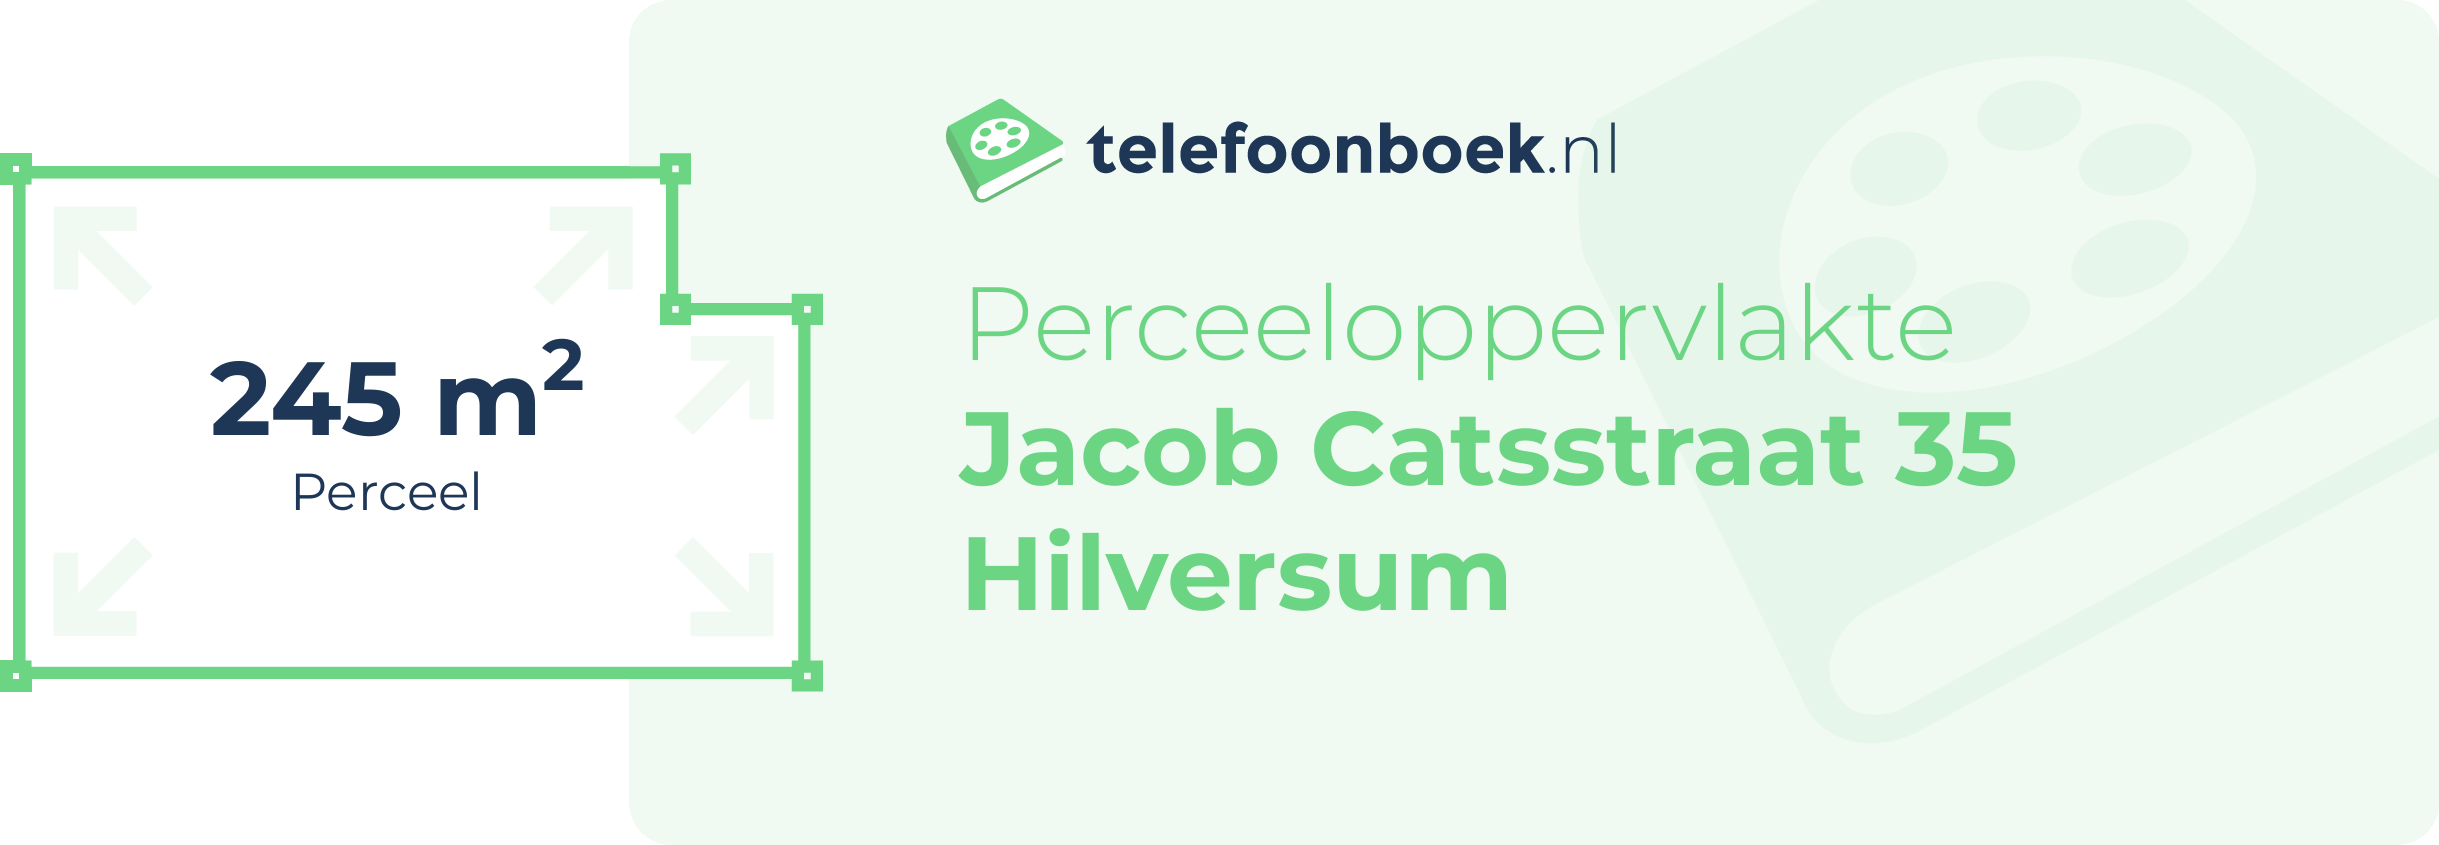 Perceeloppervlakte Jacob Catsstraat 35 Hilversum